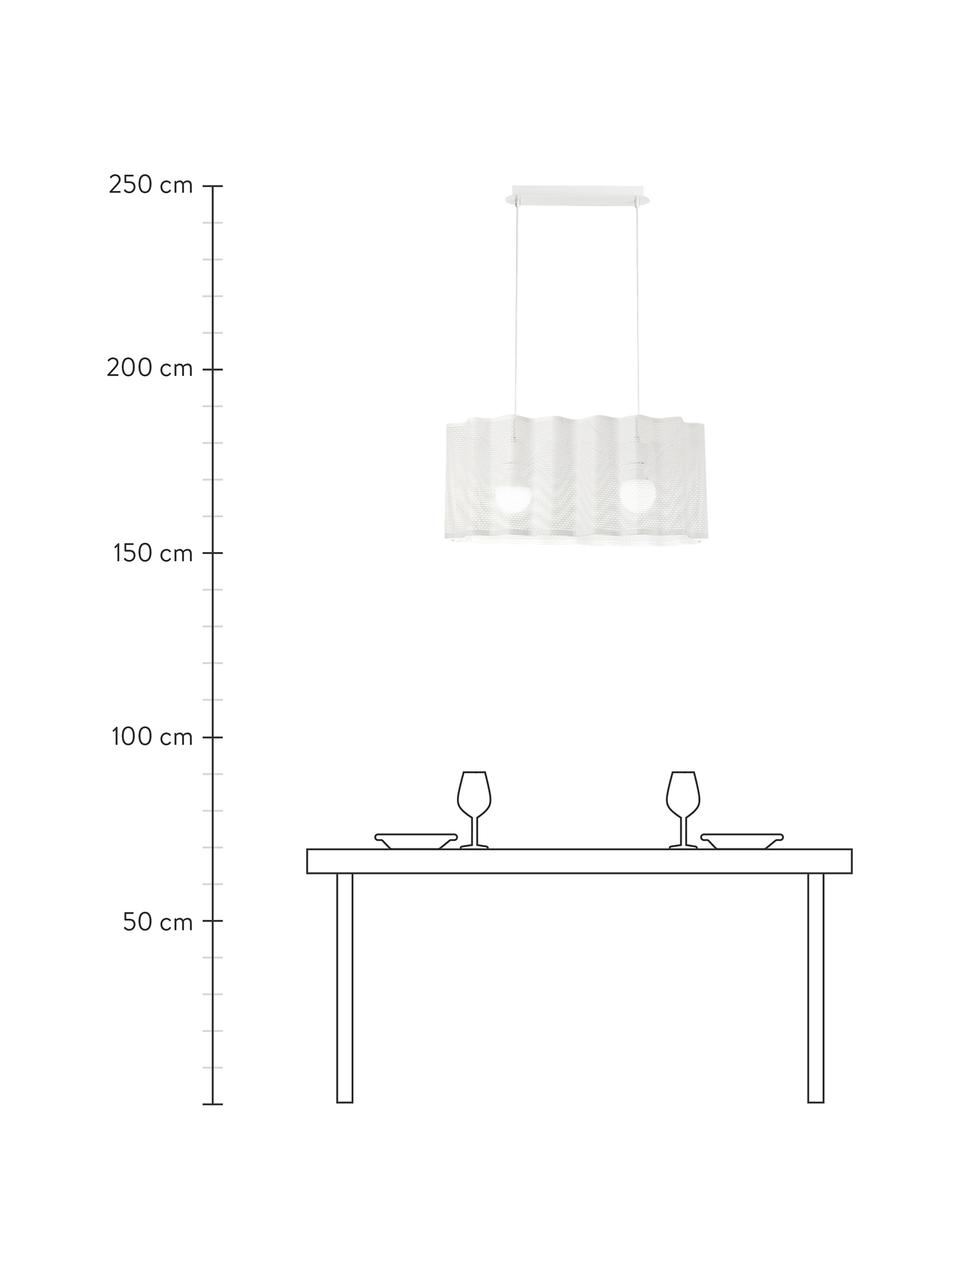 Ovale hanglamp Glicine in wit, Lampenkap: gecoat metaal, Baldakijn: gecoat metaal, Wit, 70 x 28 cm